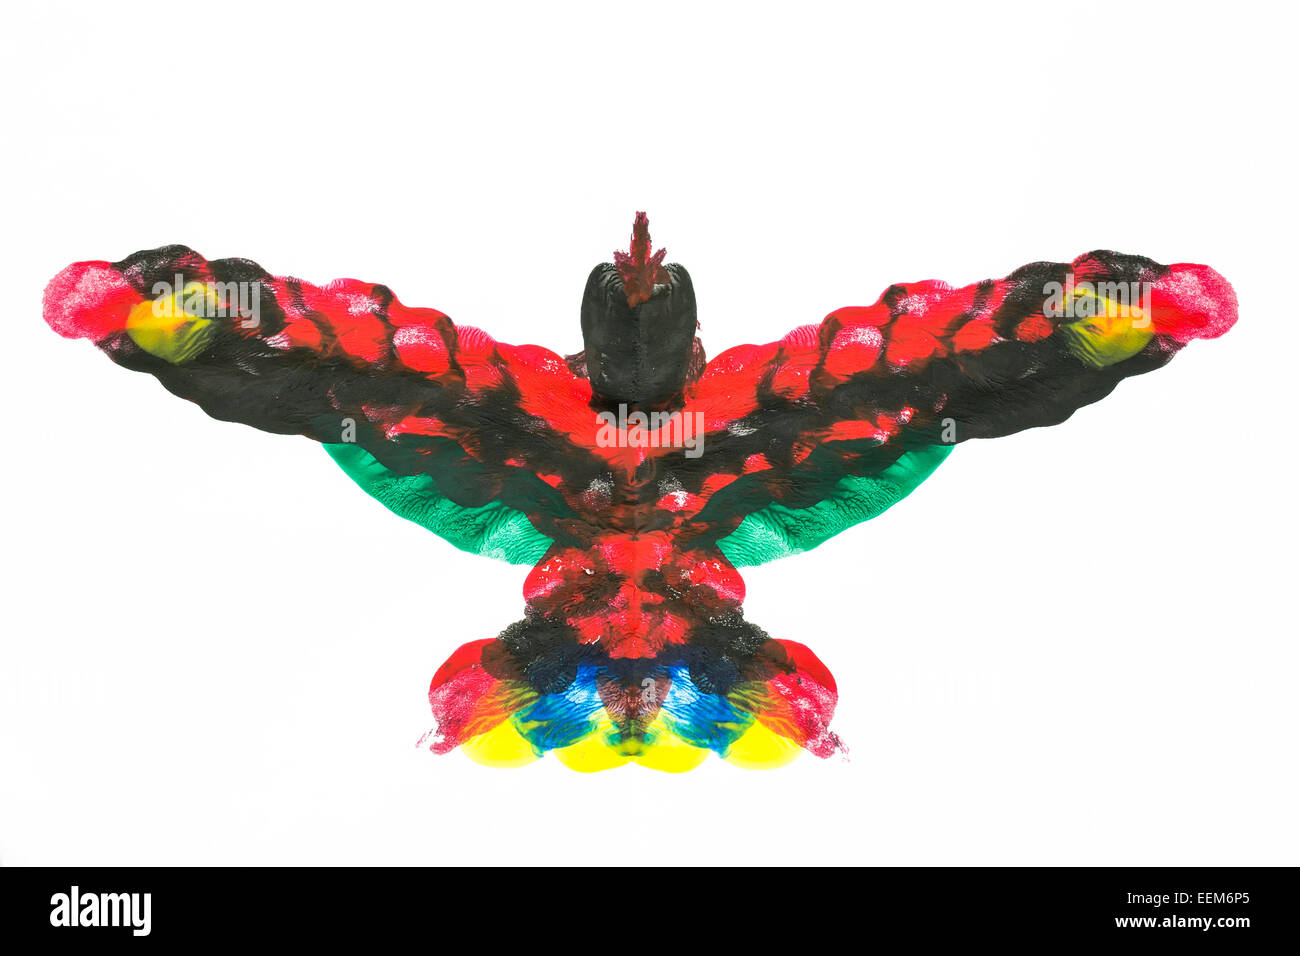 Forme abstraite multicolore semblable à un oiseau exotique faite de mélange de peinture acrylique symétriques, isoler les couleurs sur whit Banque D'Images